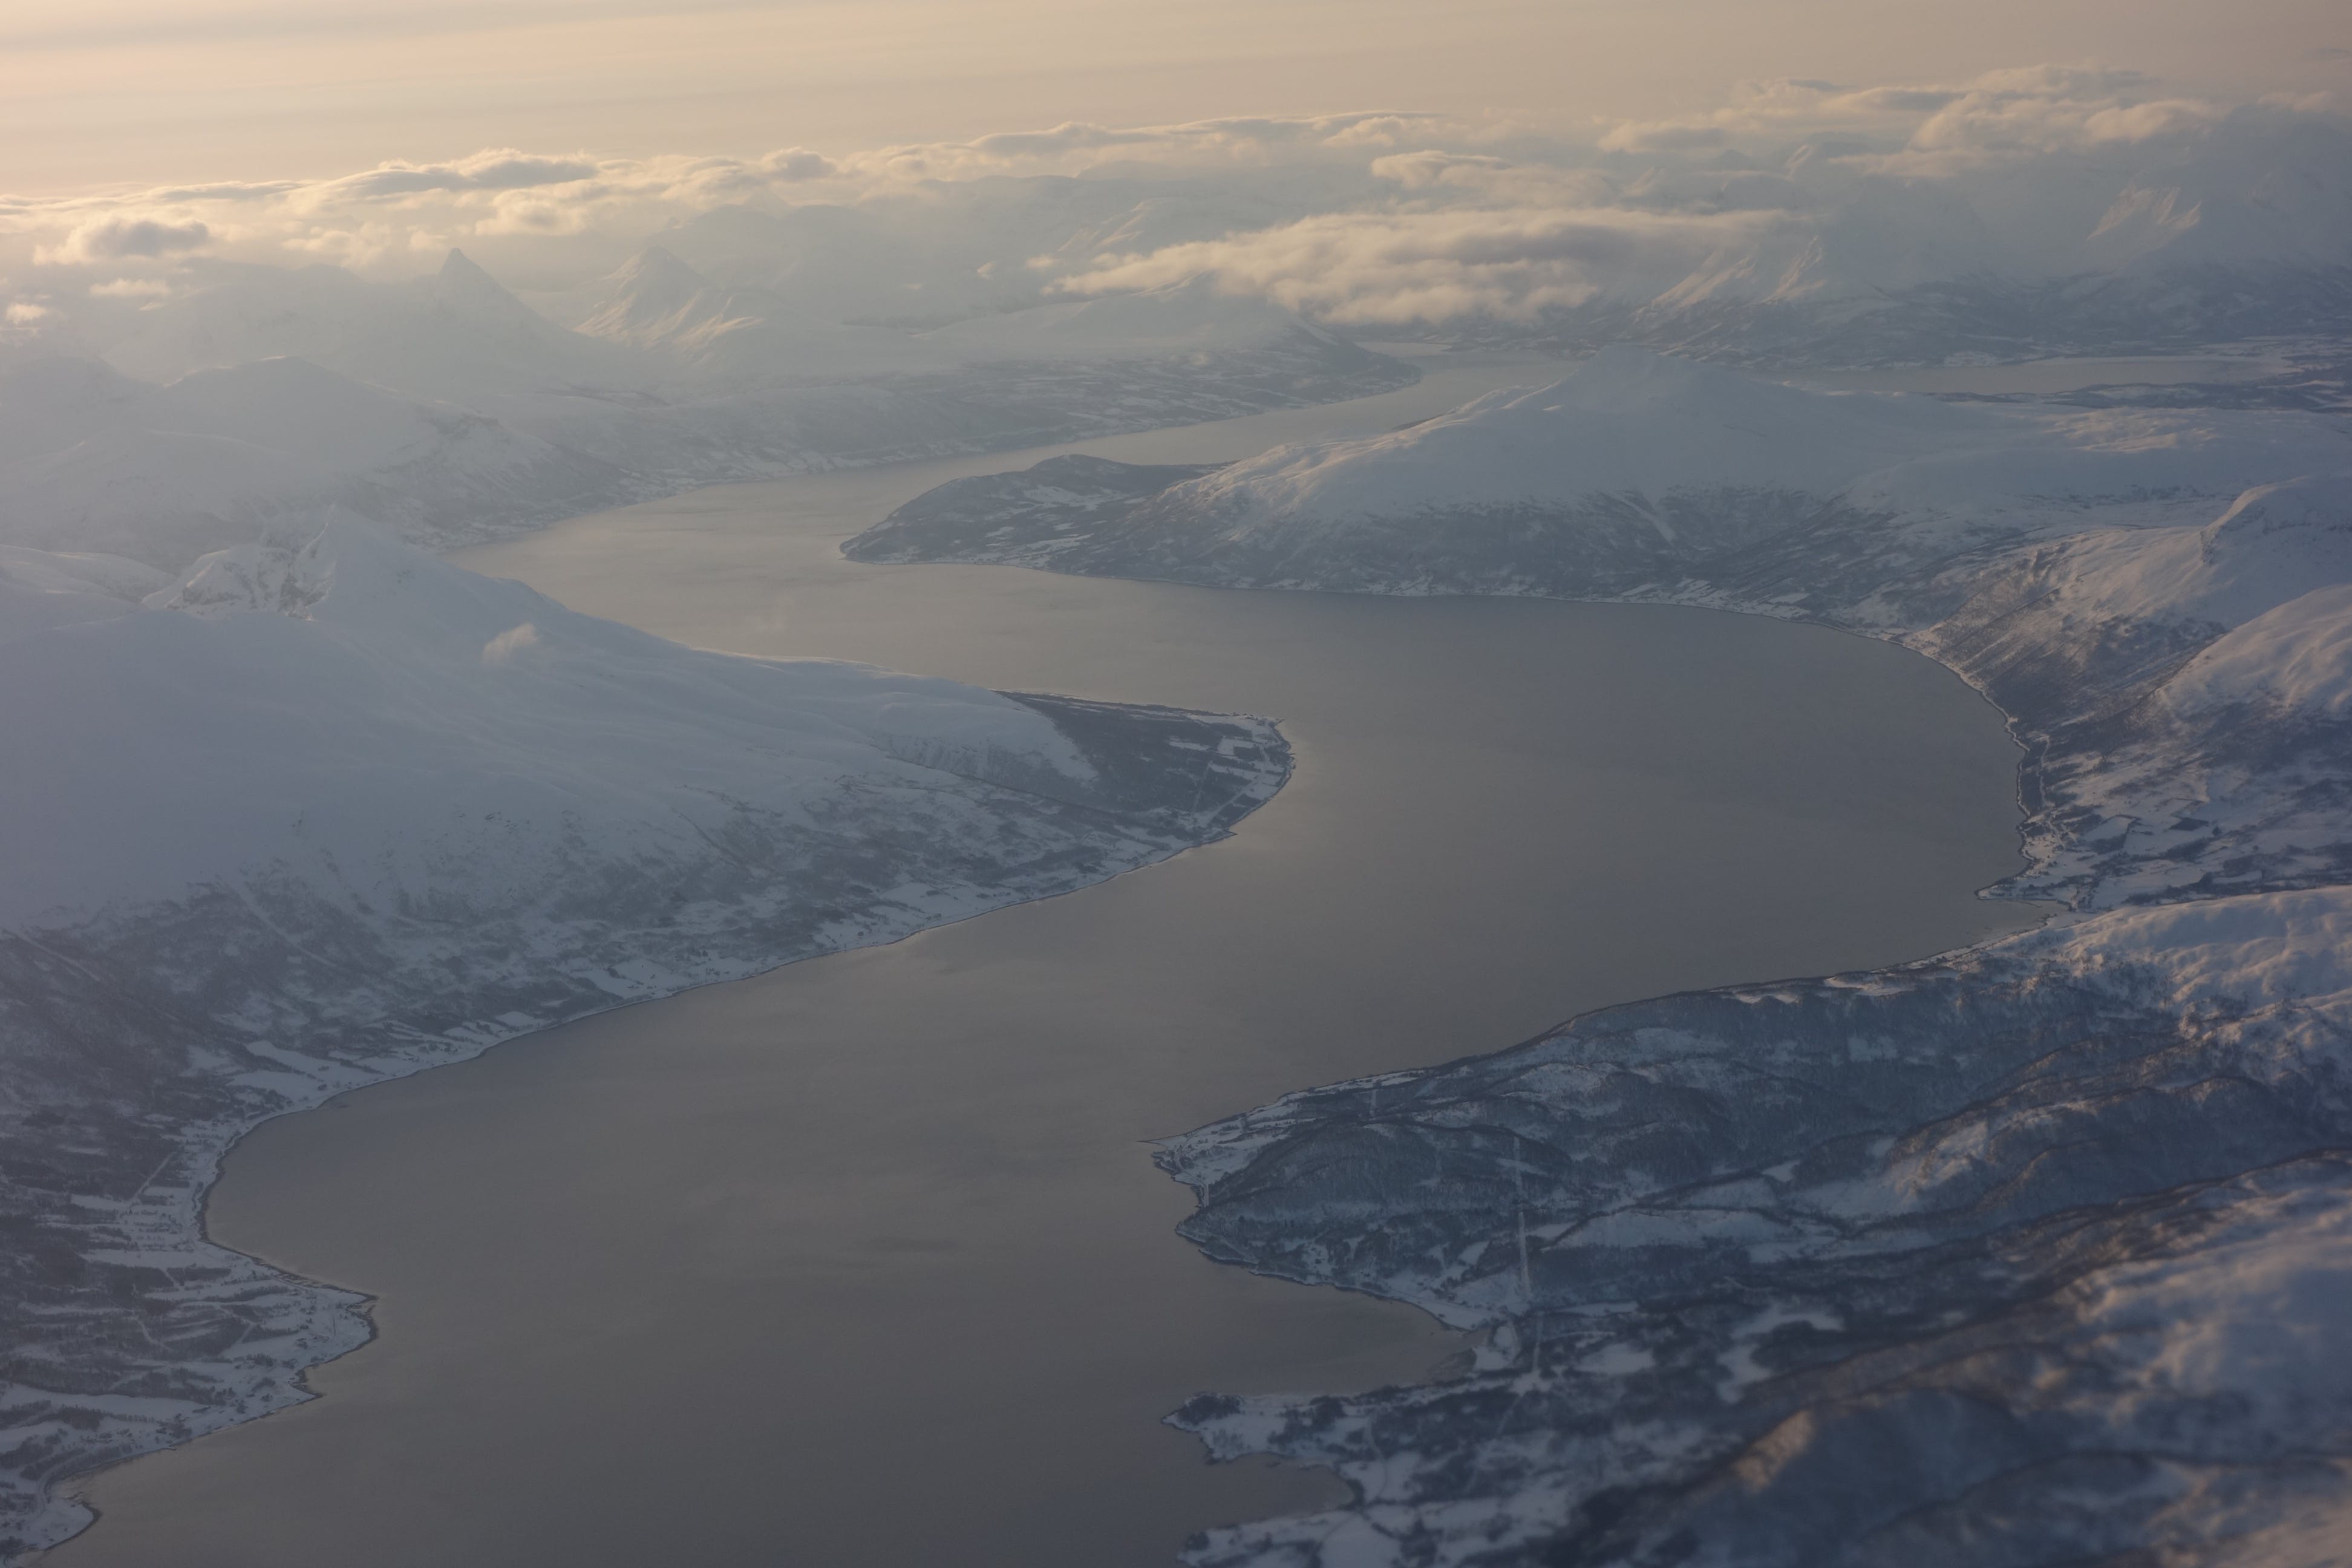 從飛機俯瞰而下極為震撼的冰山場景